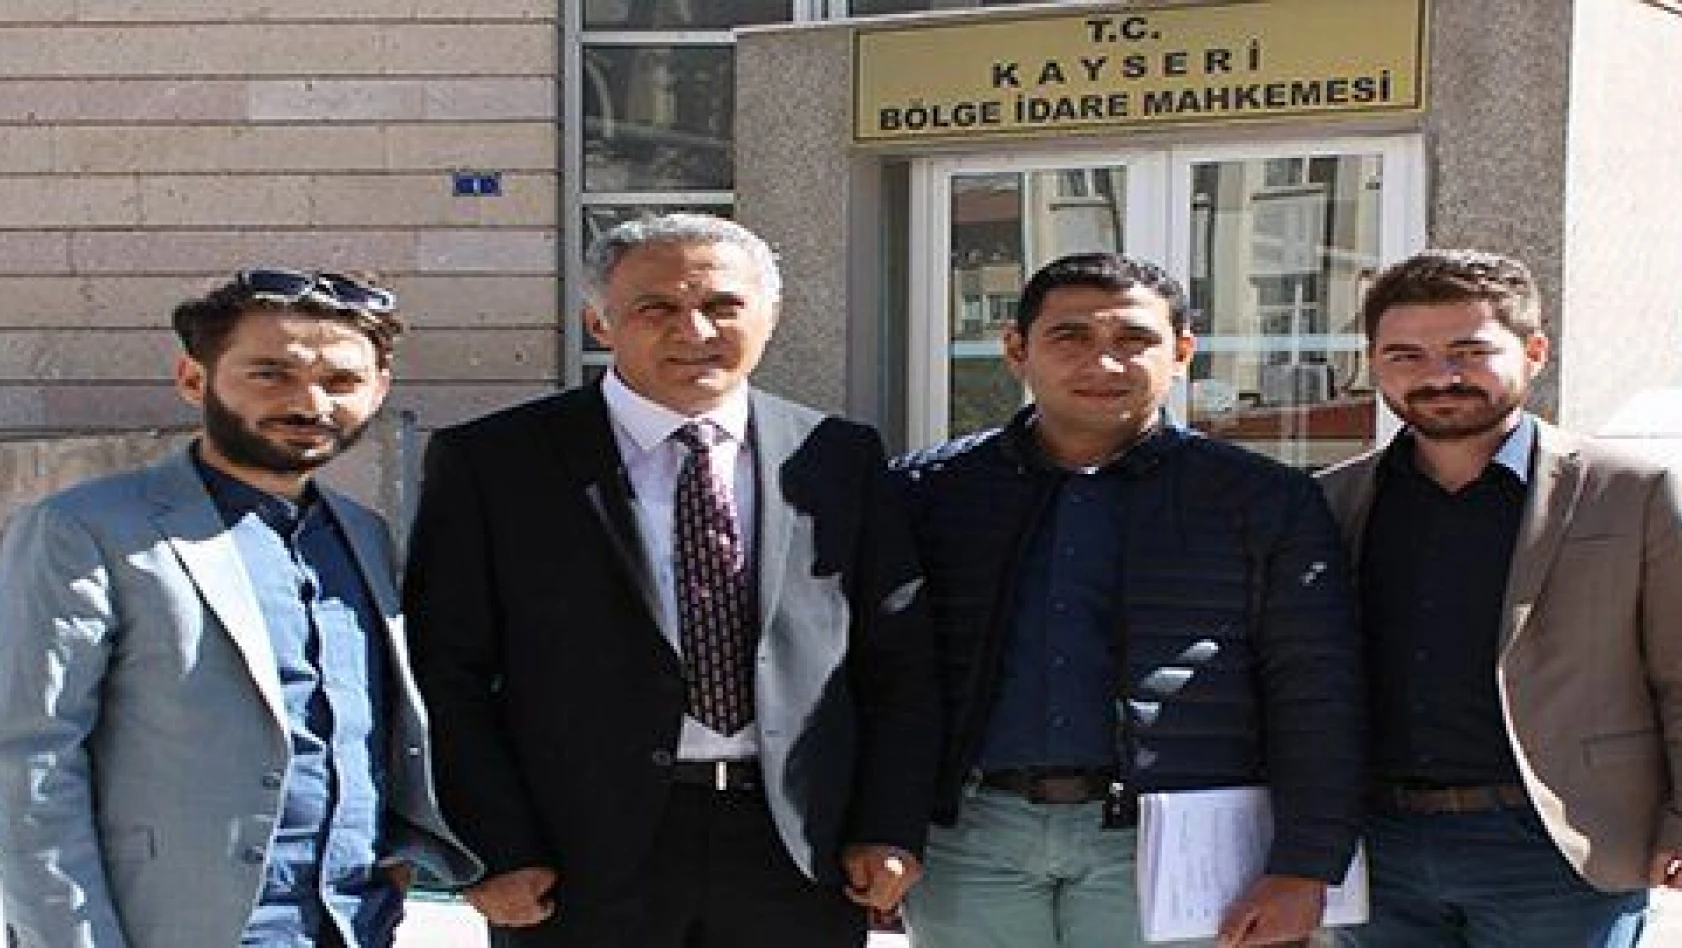 Tüketiciler Birliği Kayseri Büyükşehir Belediyesi'ne dava açtı 